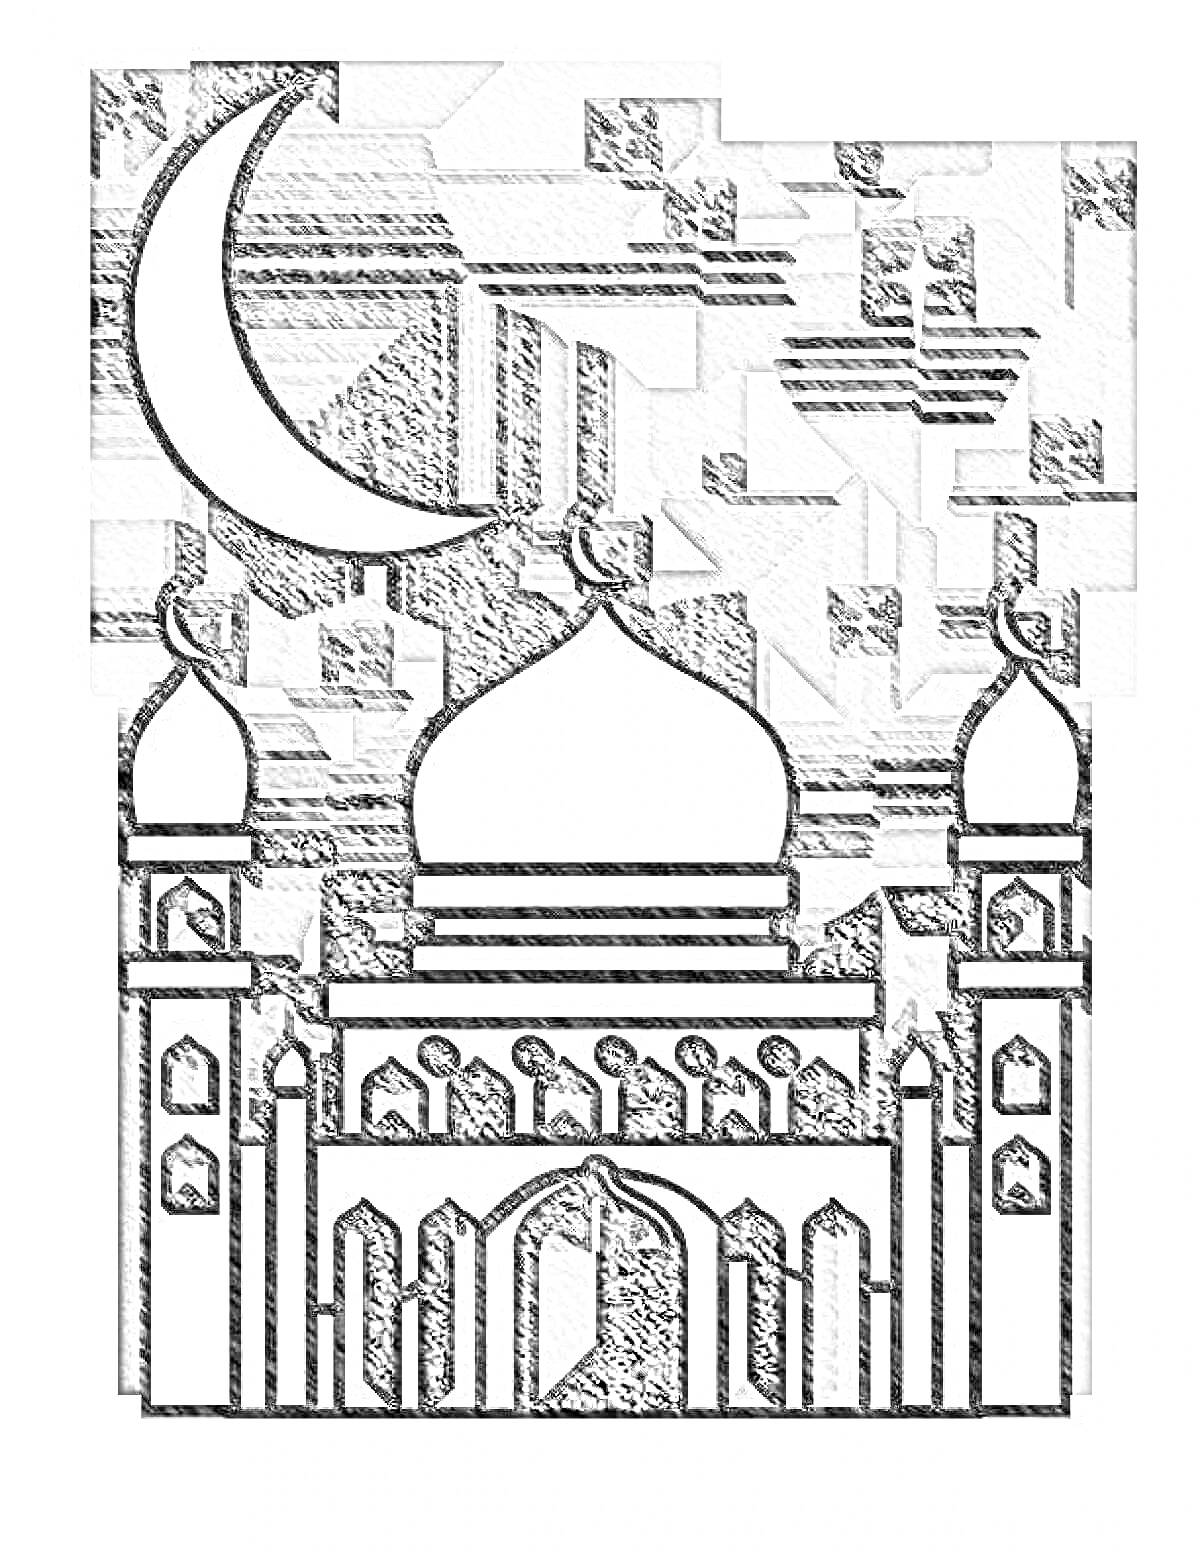 Мечеть с большими куполами, башнями, полумесяцем и звездами